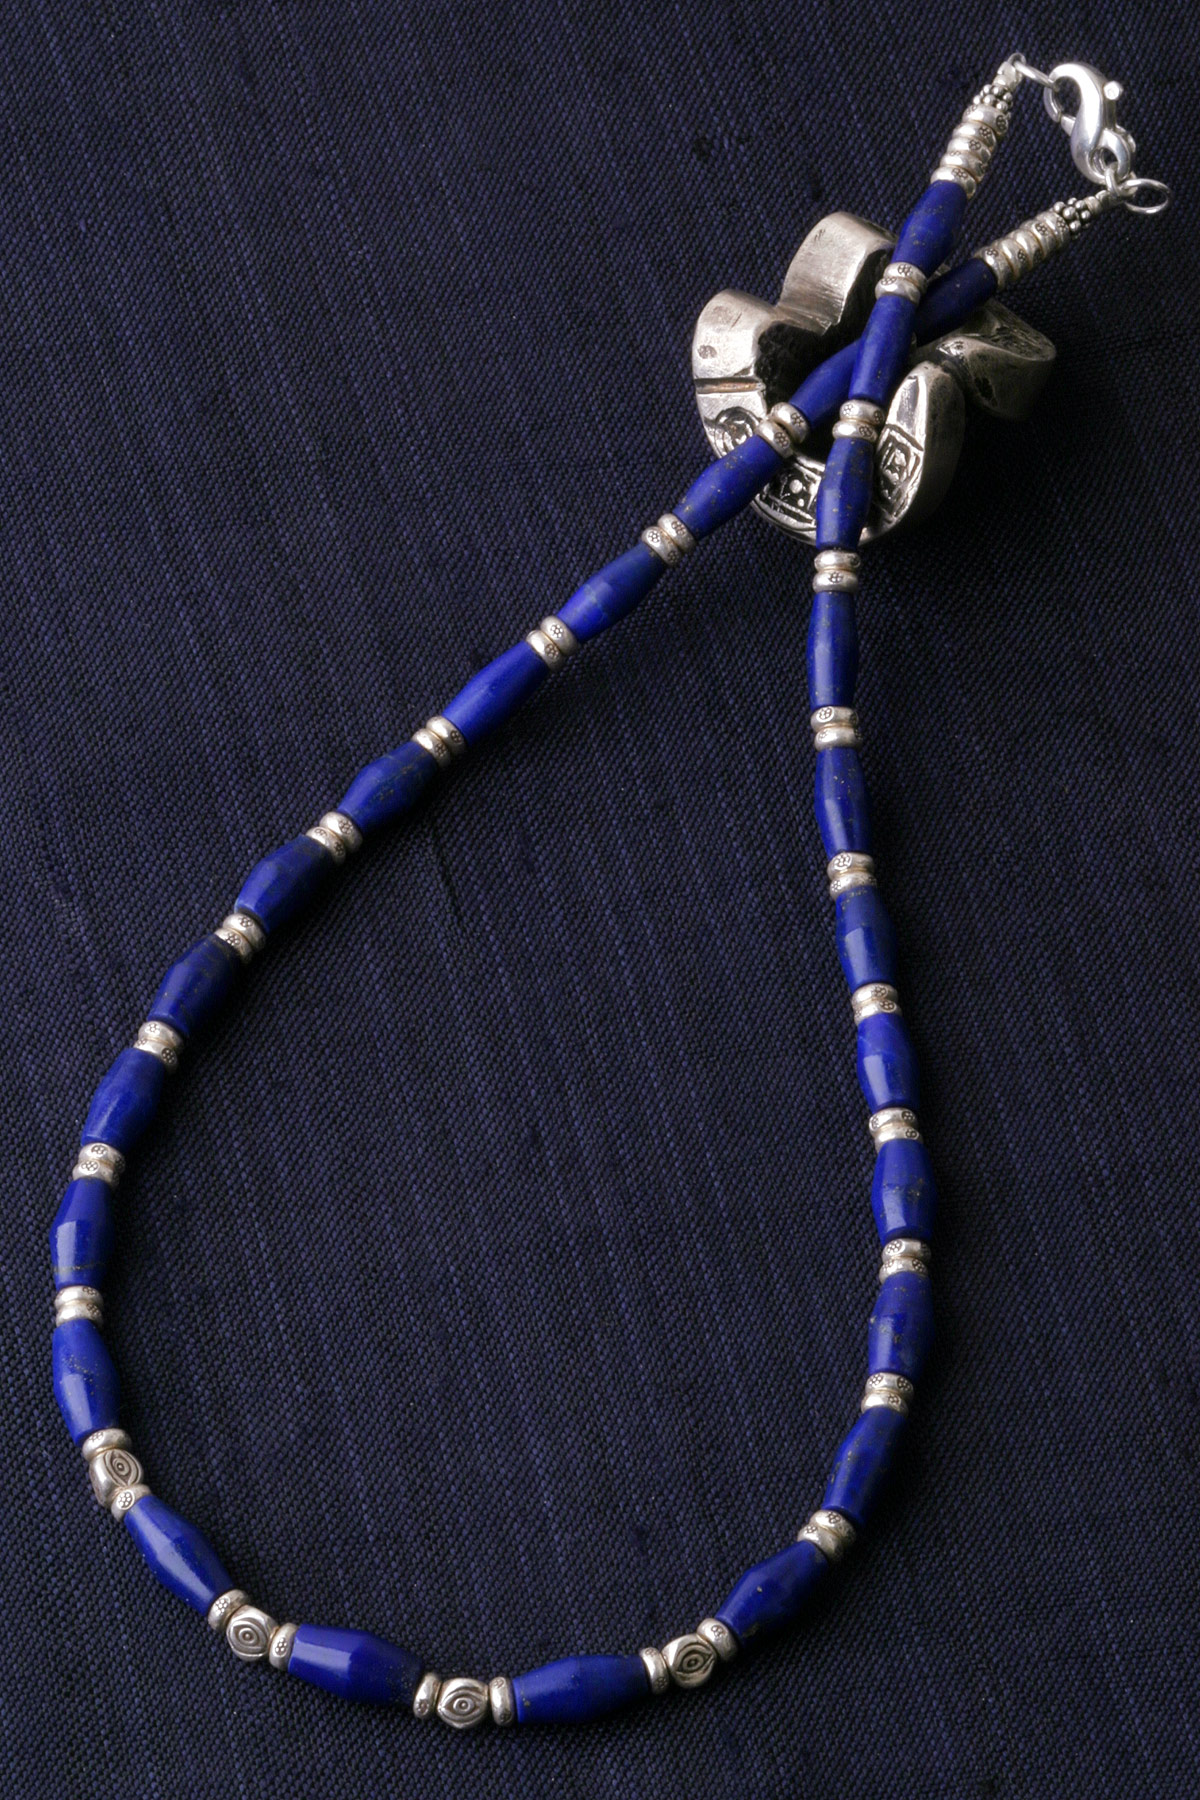 カレン族シルバーネックレス/ラピスラズリ#a03-45 - マットな質感、輝きを抑えた品格のある青色。